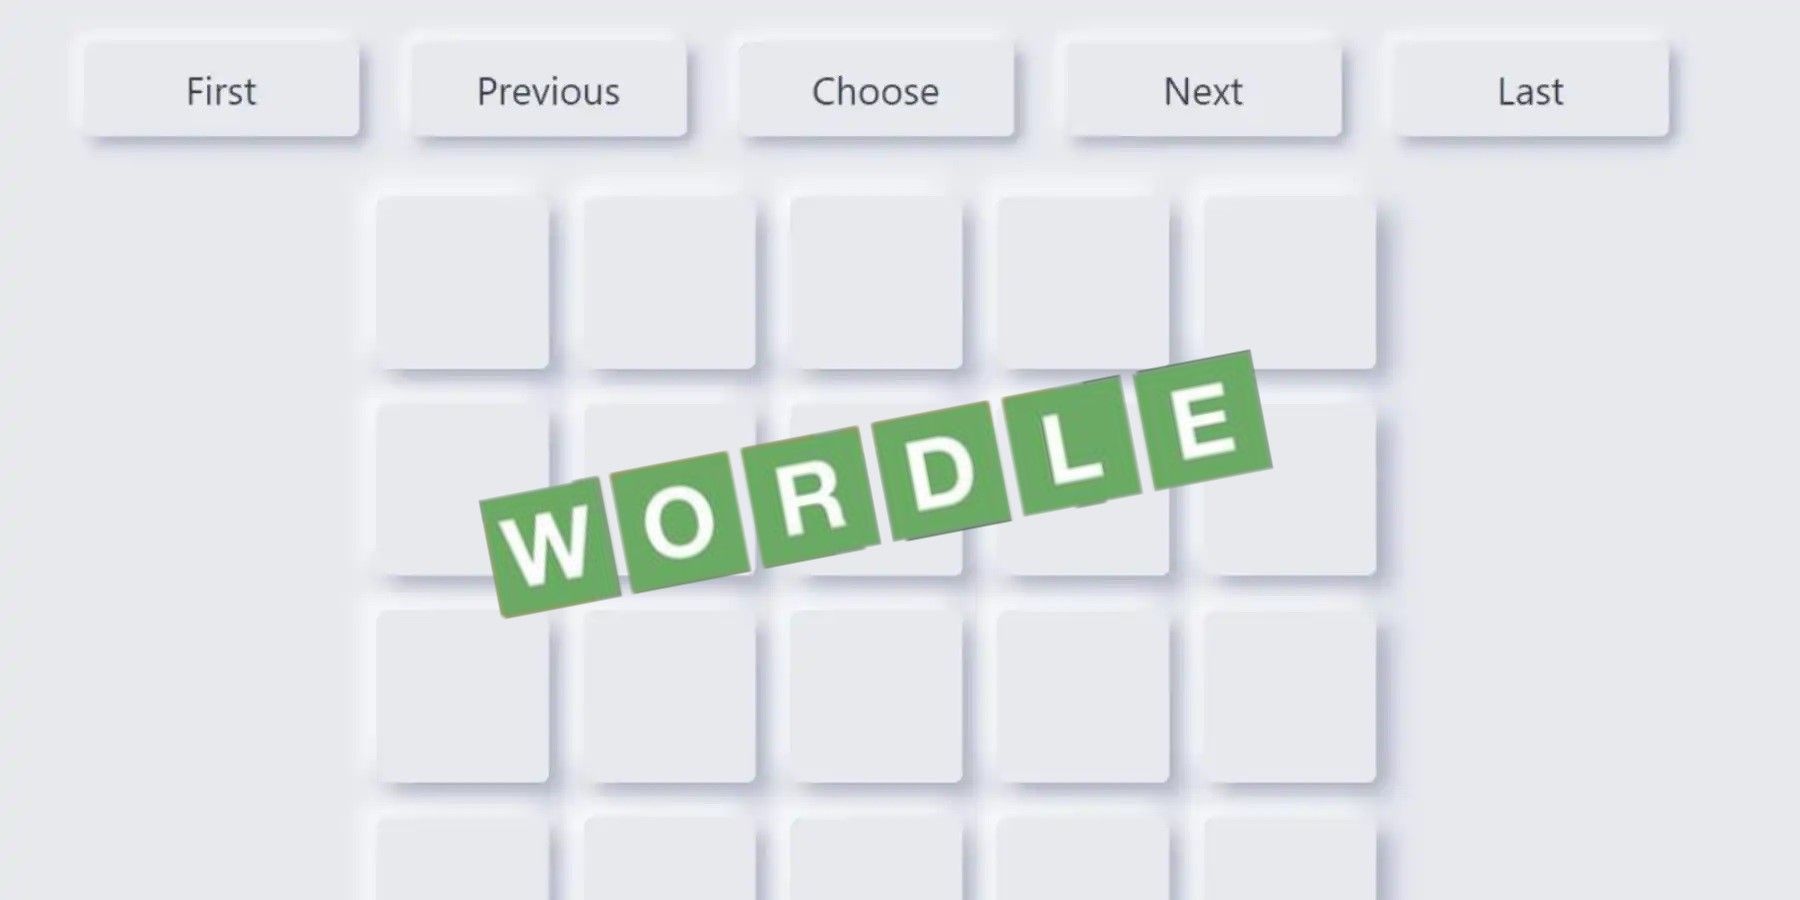 Az utolsó Wordle Archívum leállítása visszaüthet